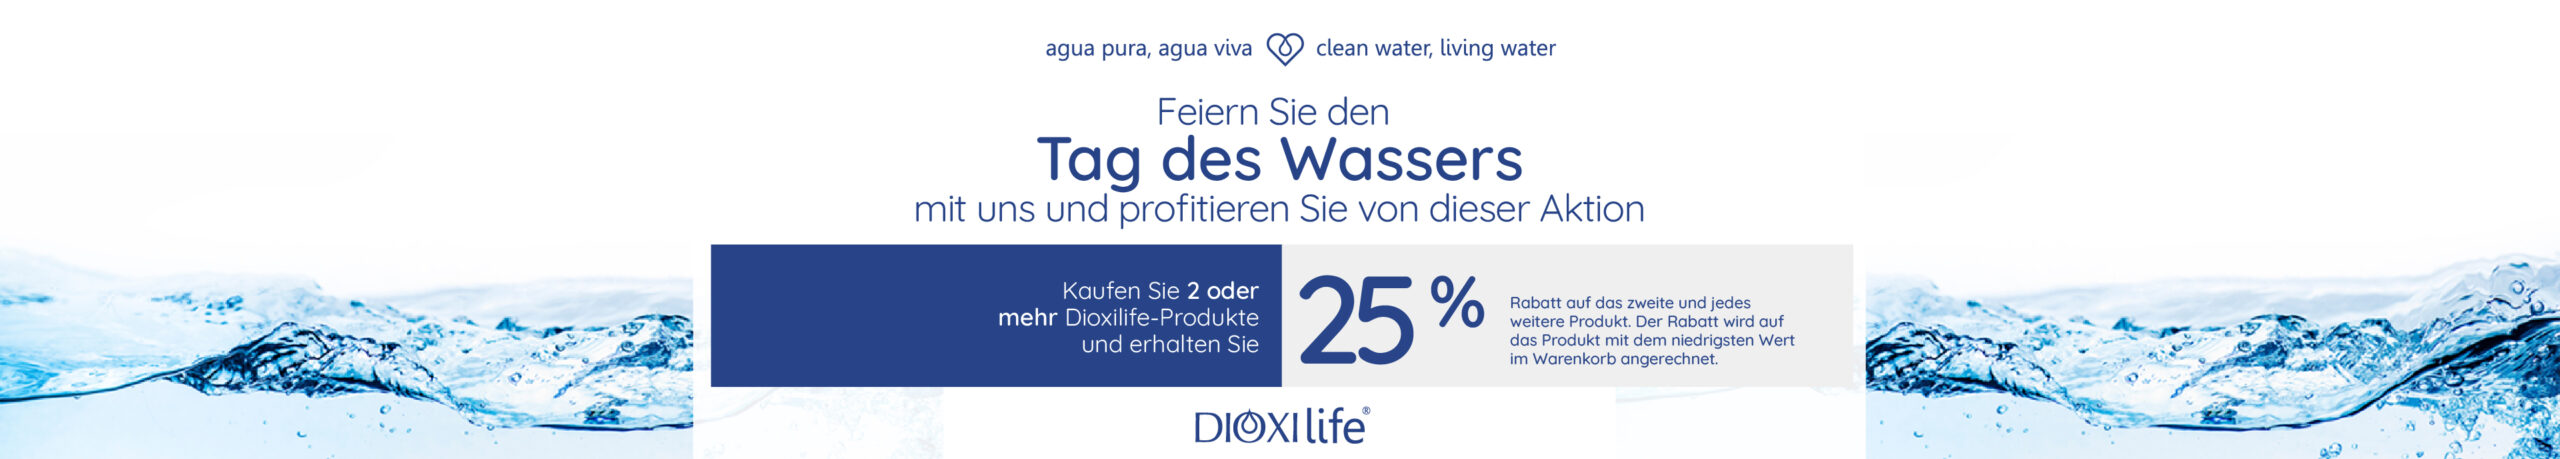 Día del agua Alemania